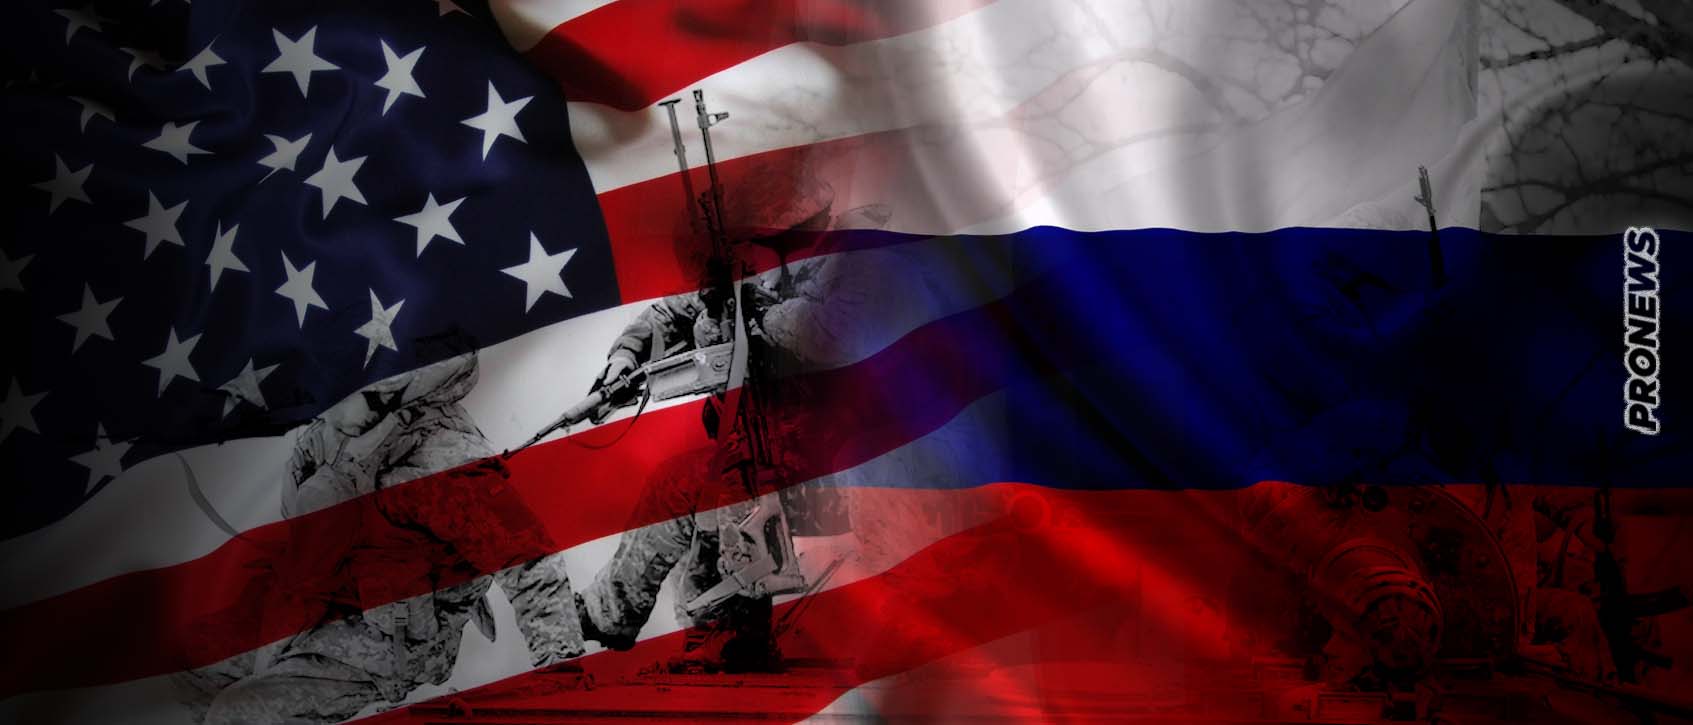 «Μυστικές συνομιλίες Αμερικανών-Ρώσων για να λήξει ο πόλεμος στην Ουκρανία βρίσκονται σε εξέλιξη» λέει το αμερικανικό NBC News